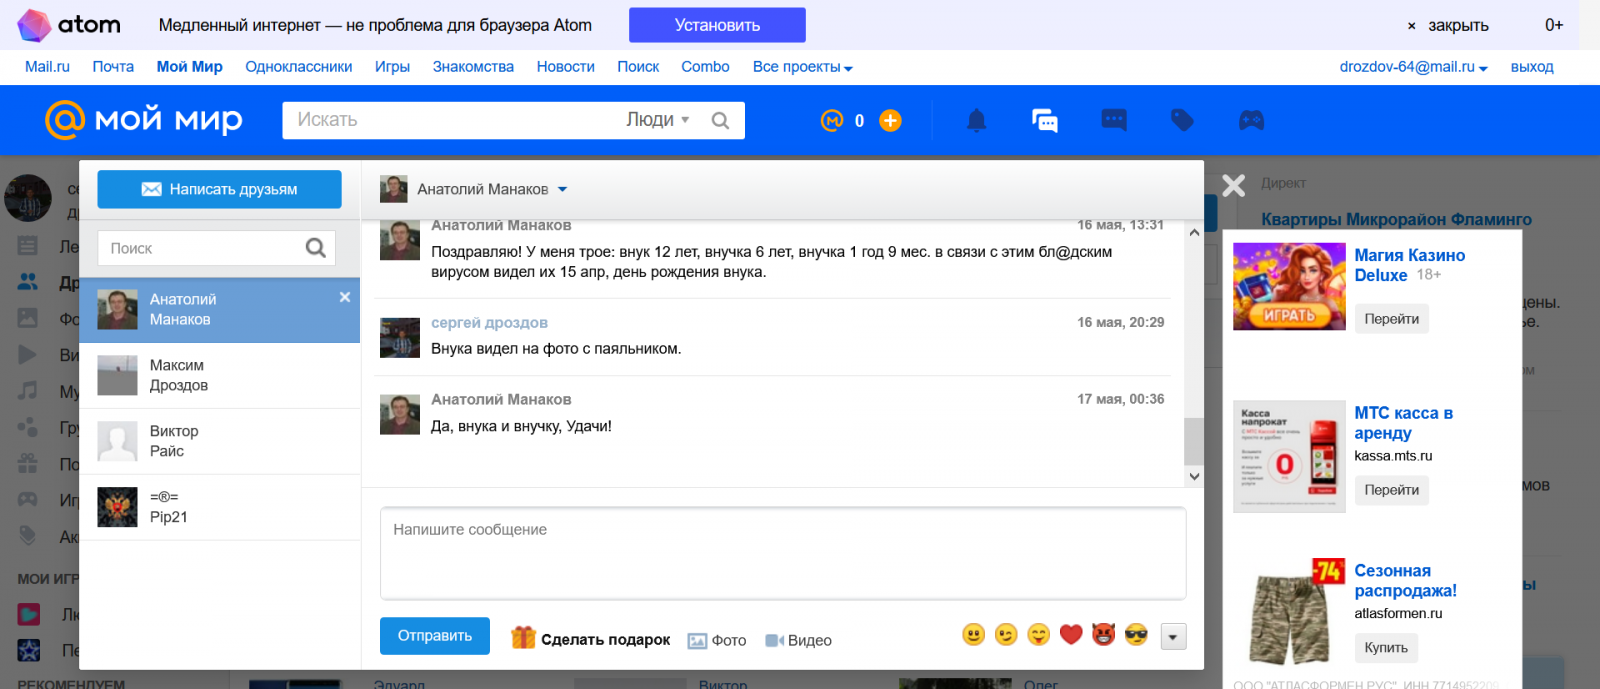 Screenshot_2020-05-18 сергей дроздов - друзья пользователя на Мой Мир Mail ru.png